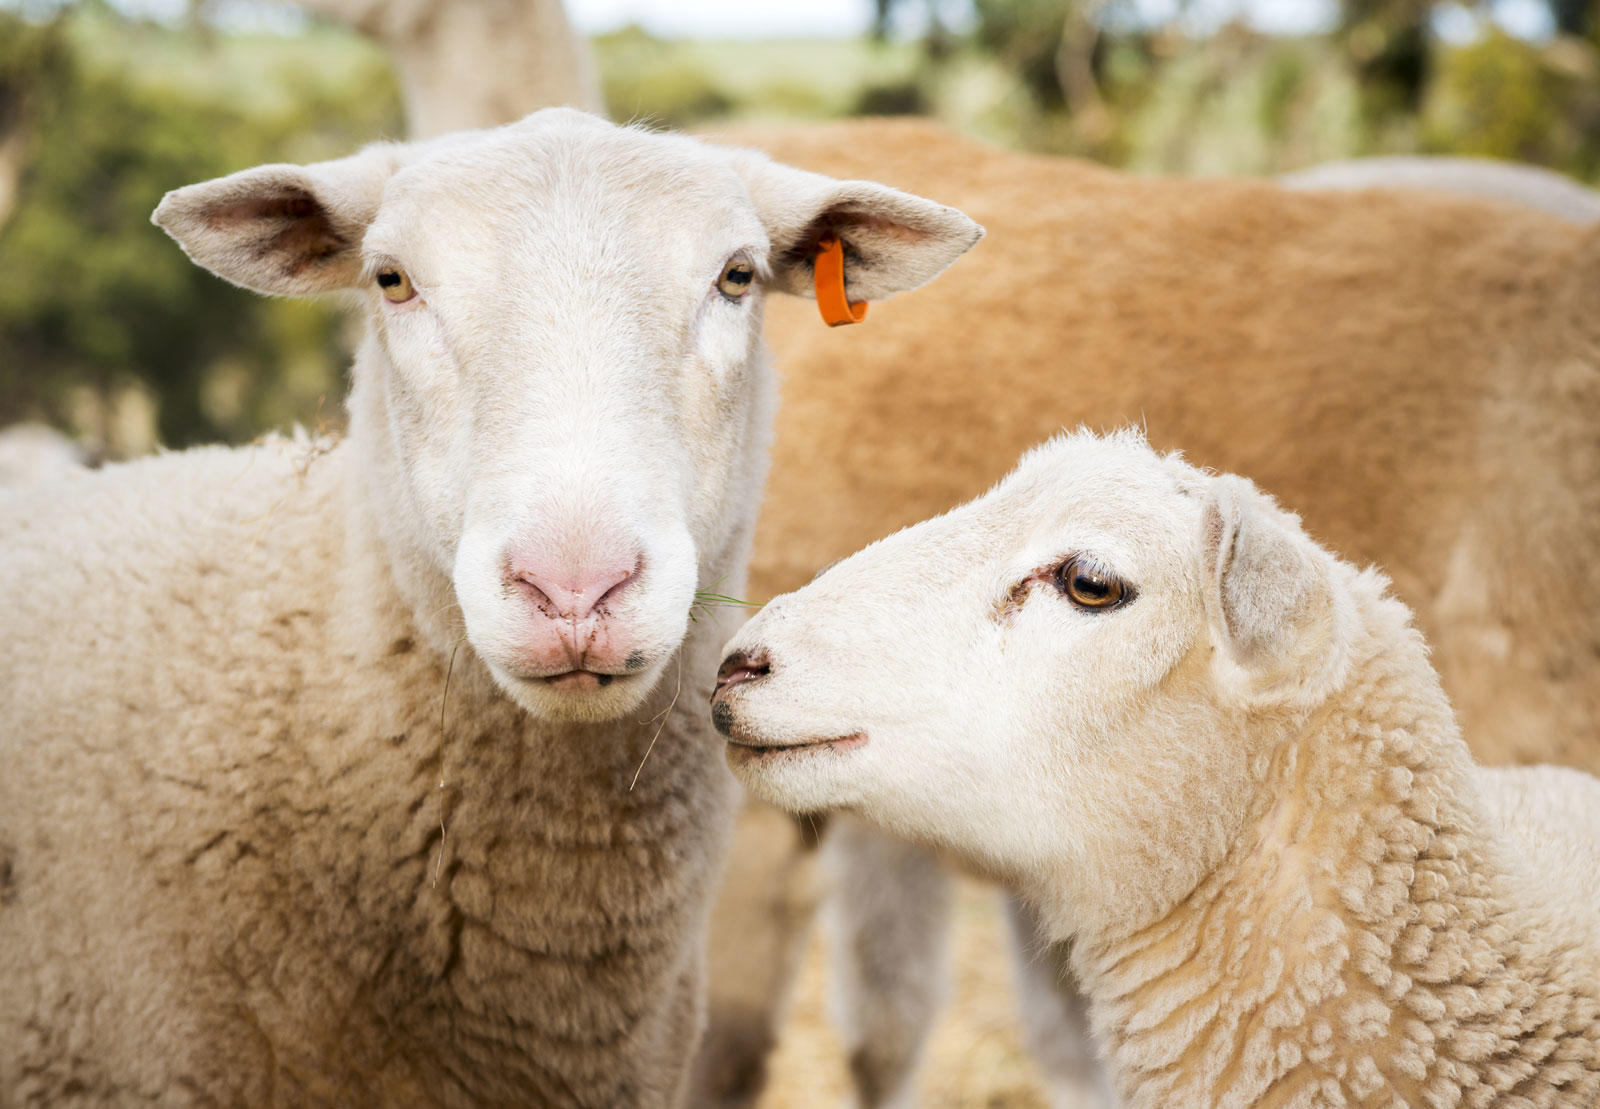 Image of sheep, close up.